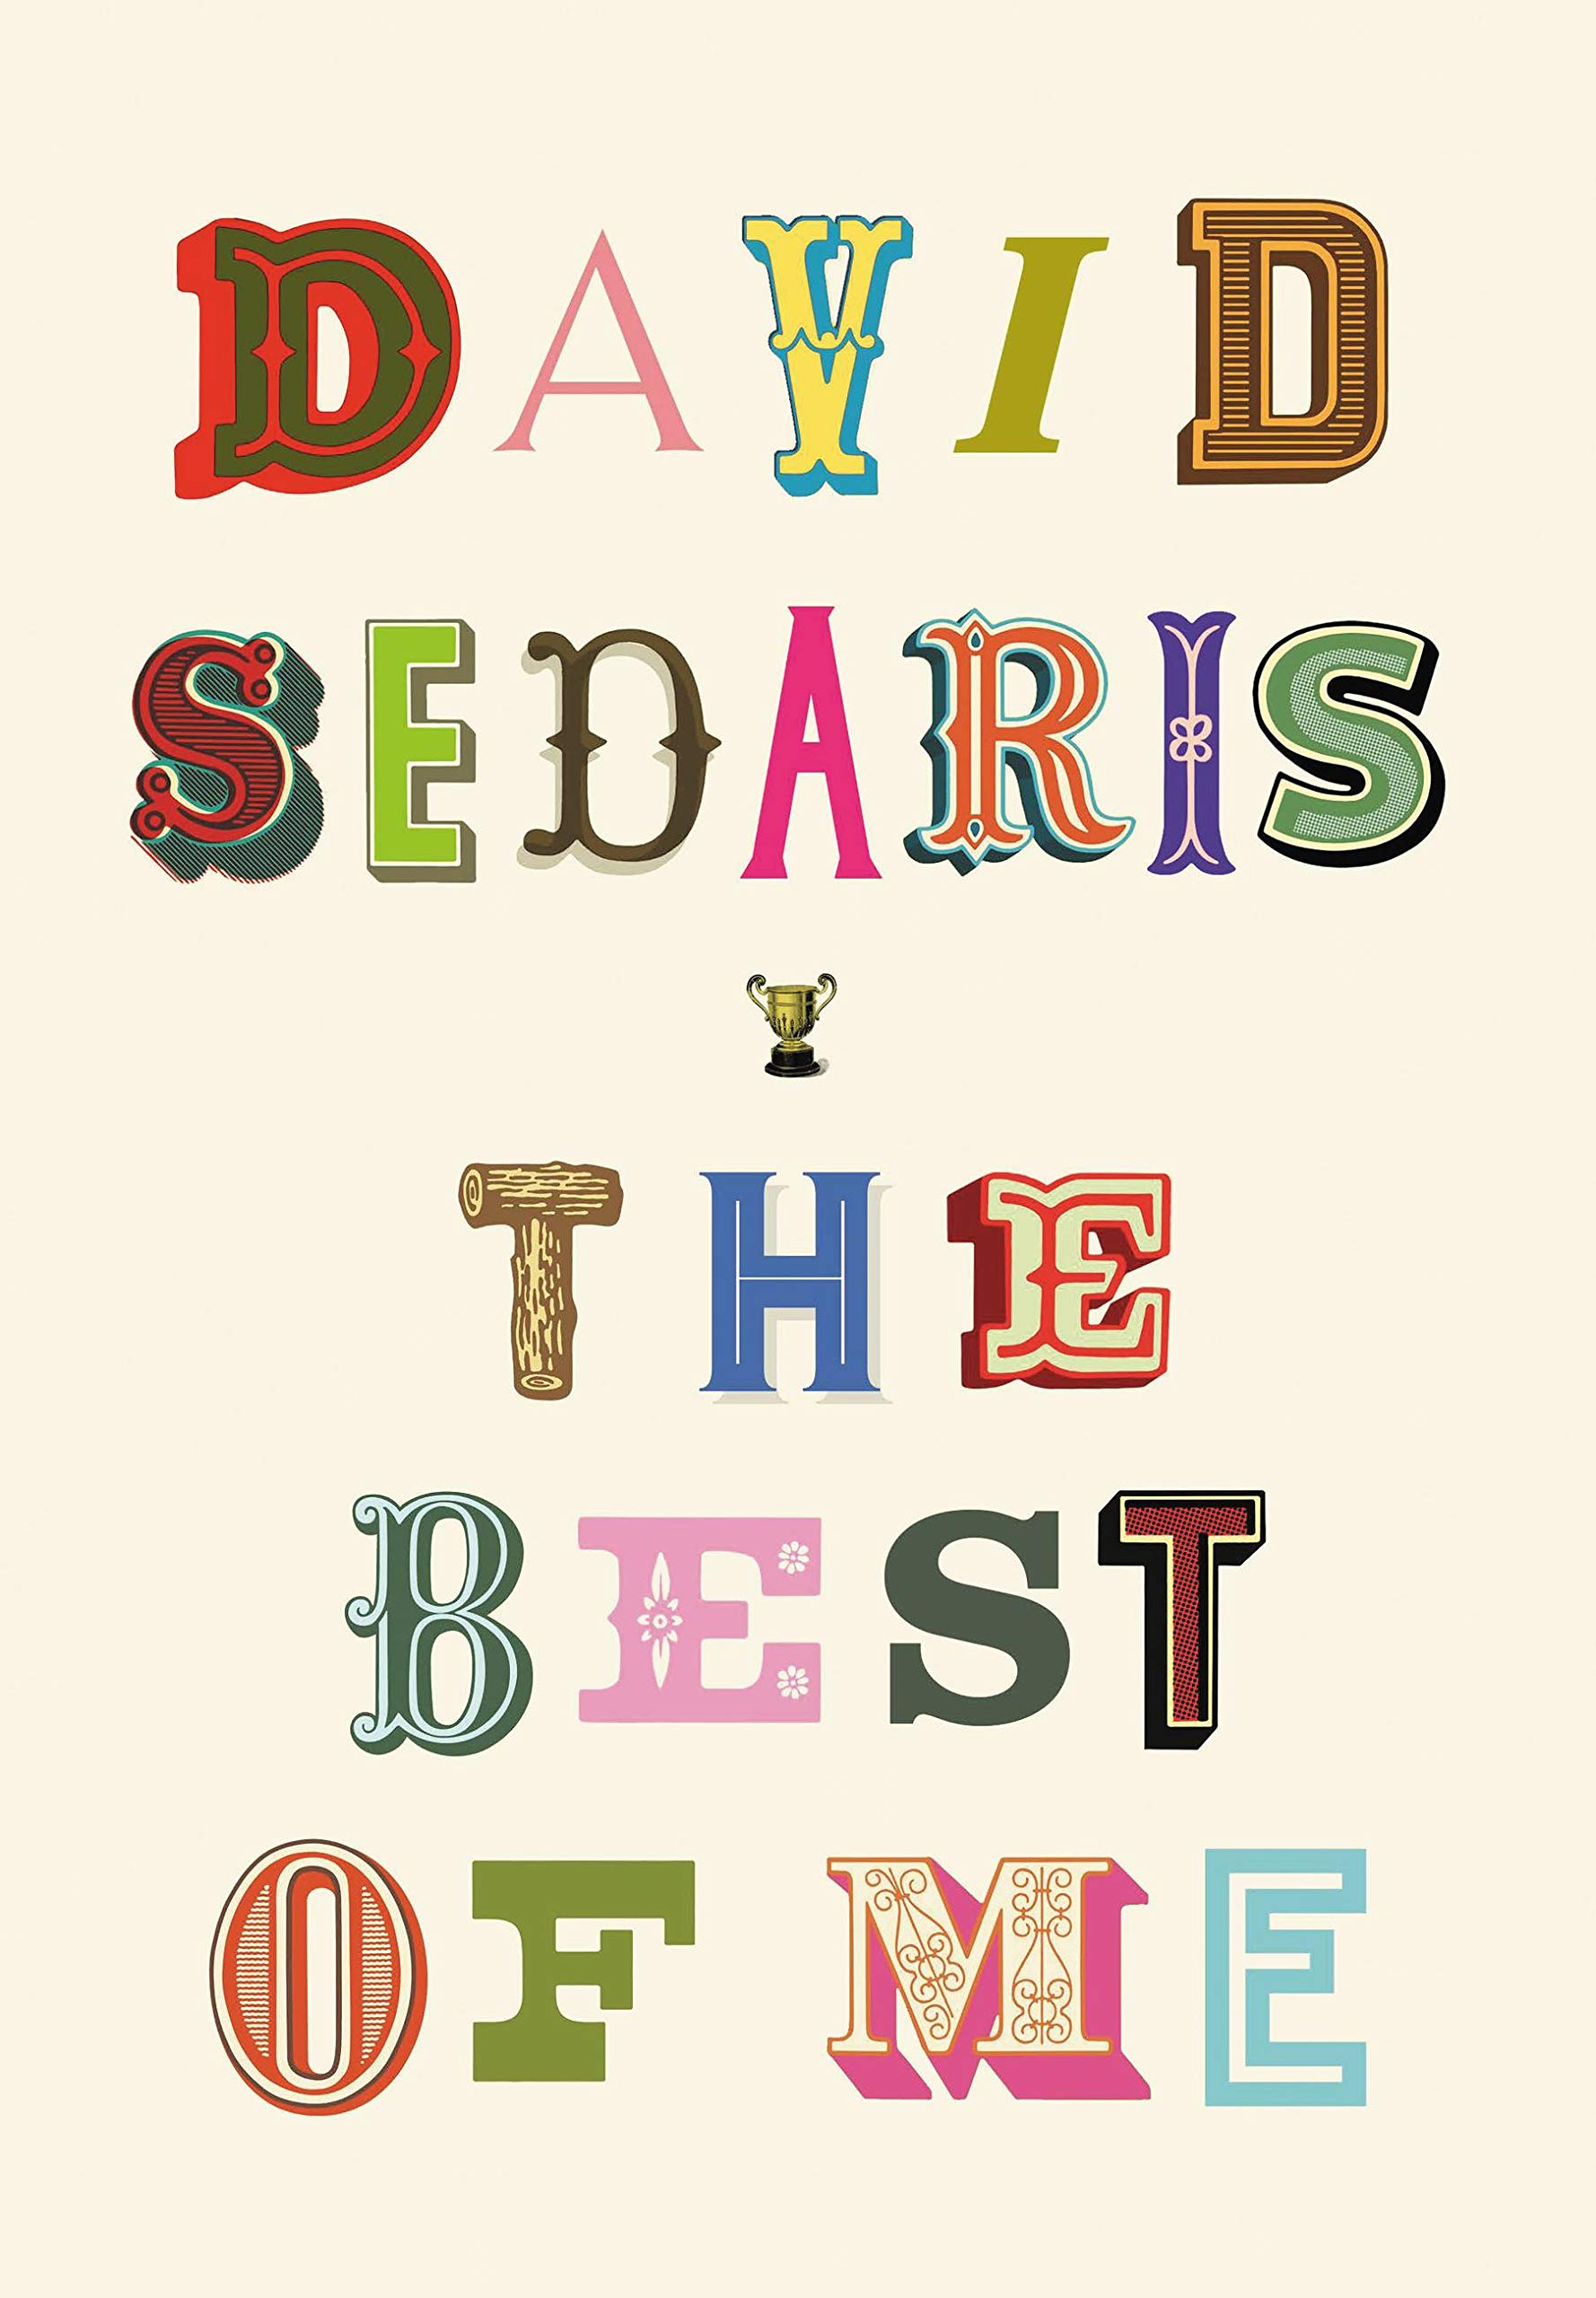 The Best of Me | David Sedaris